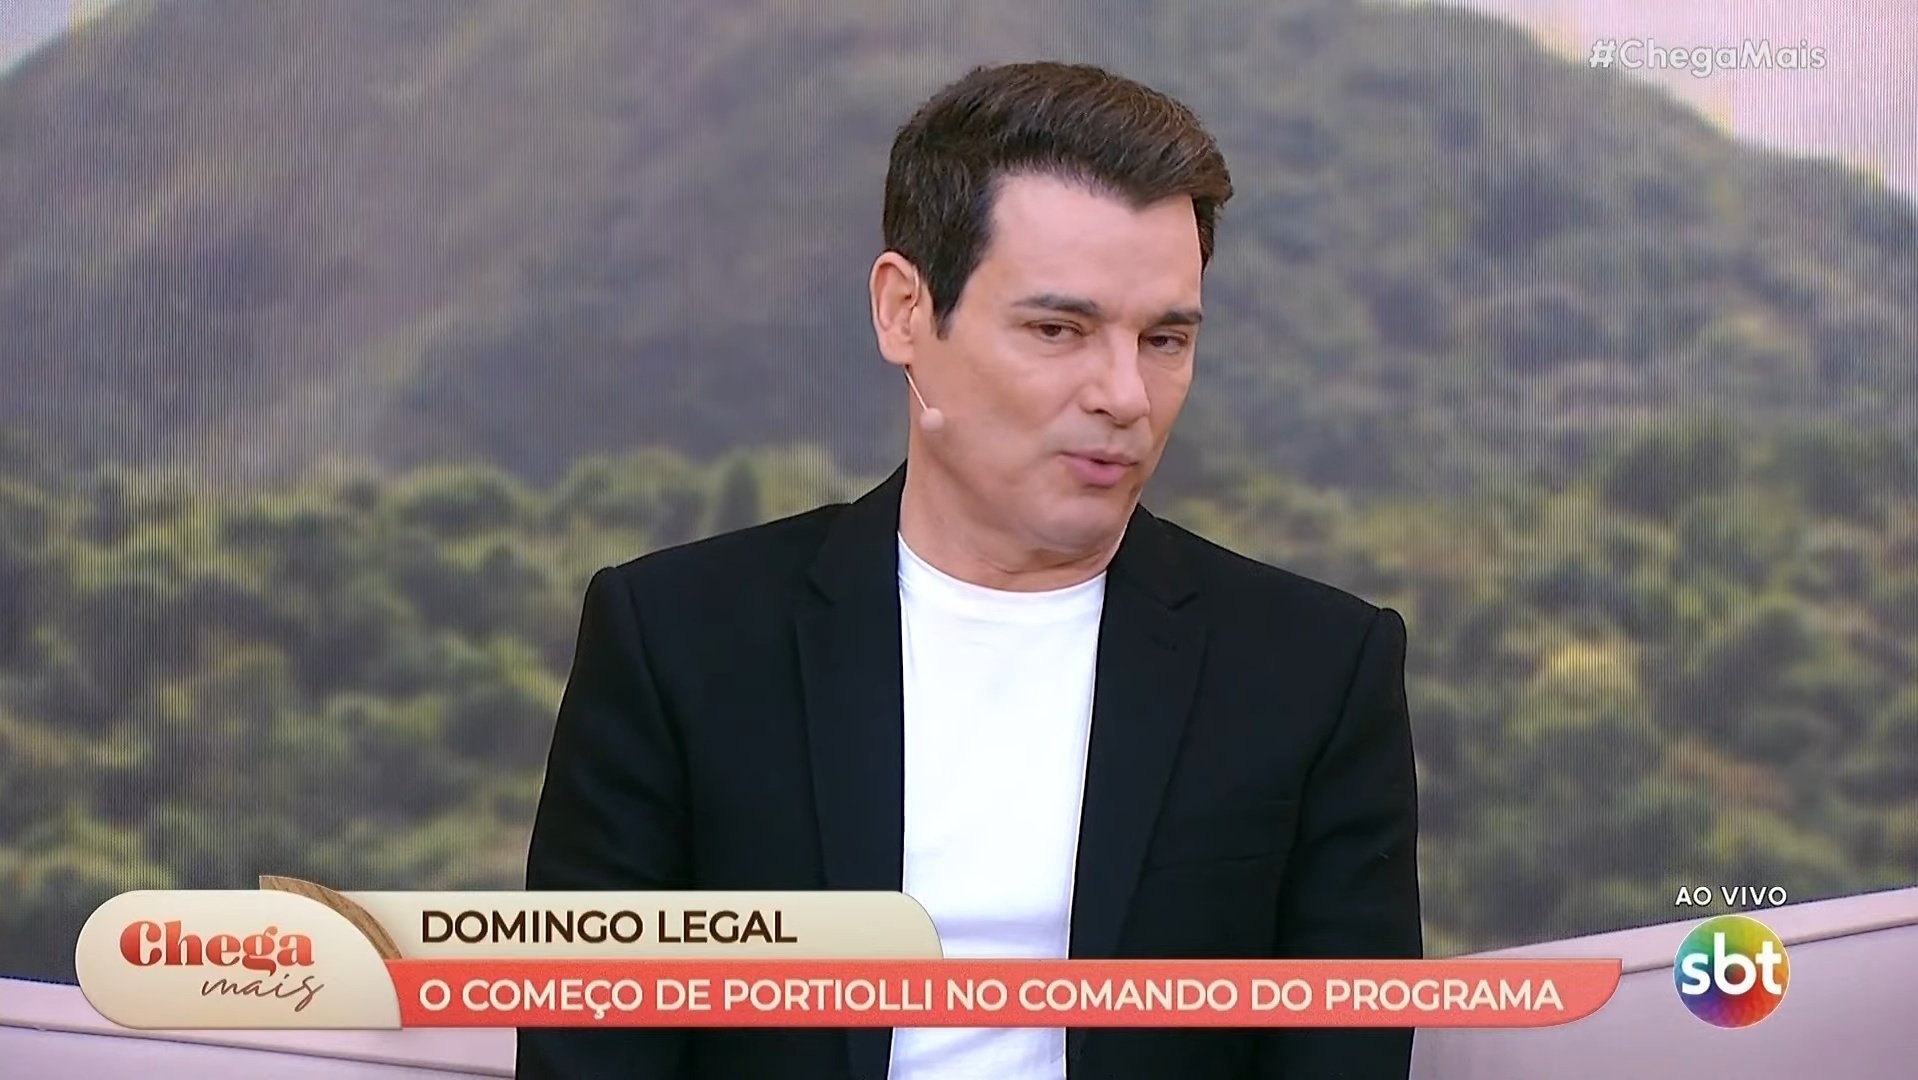 Celso Portiolli dá bronca ao vivo após Chega Mais entregar novidade do Domingo Legal: “Não é bom”